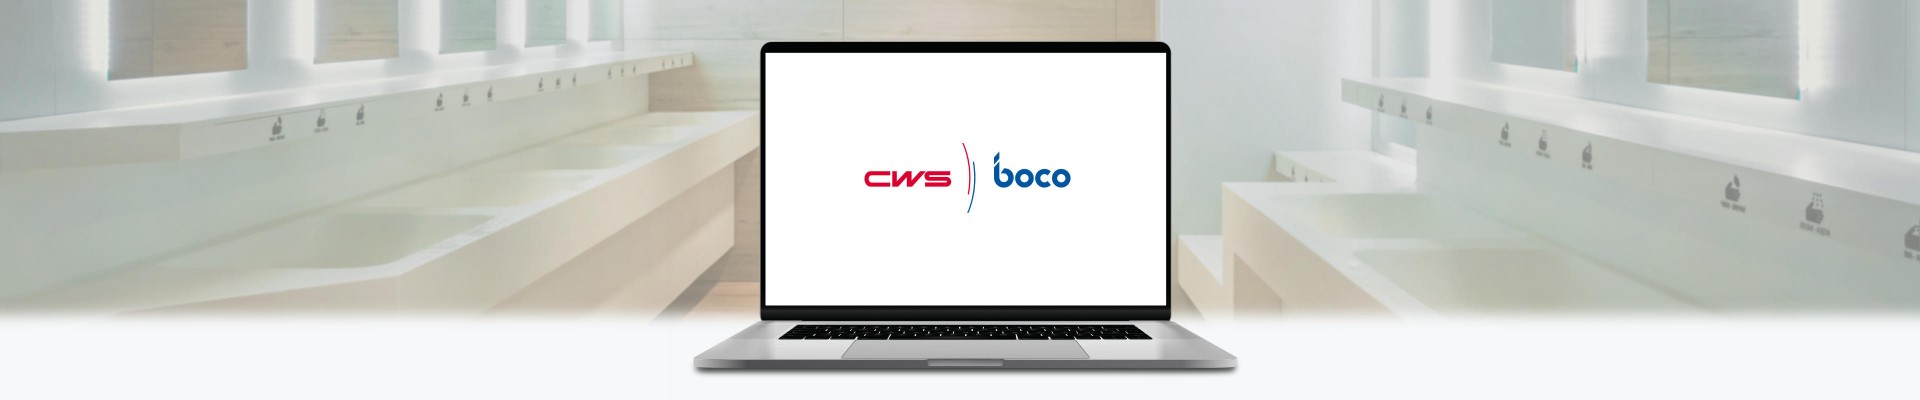 CWS-Boco